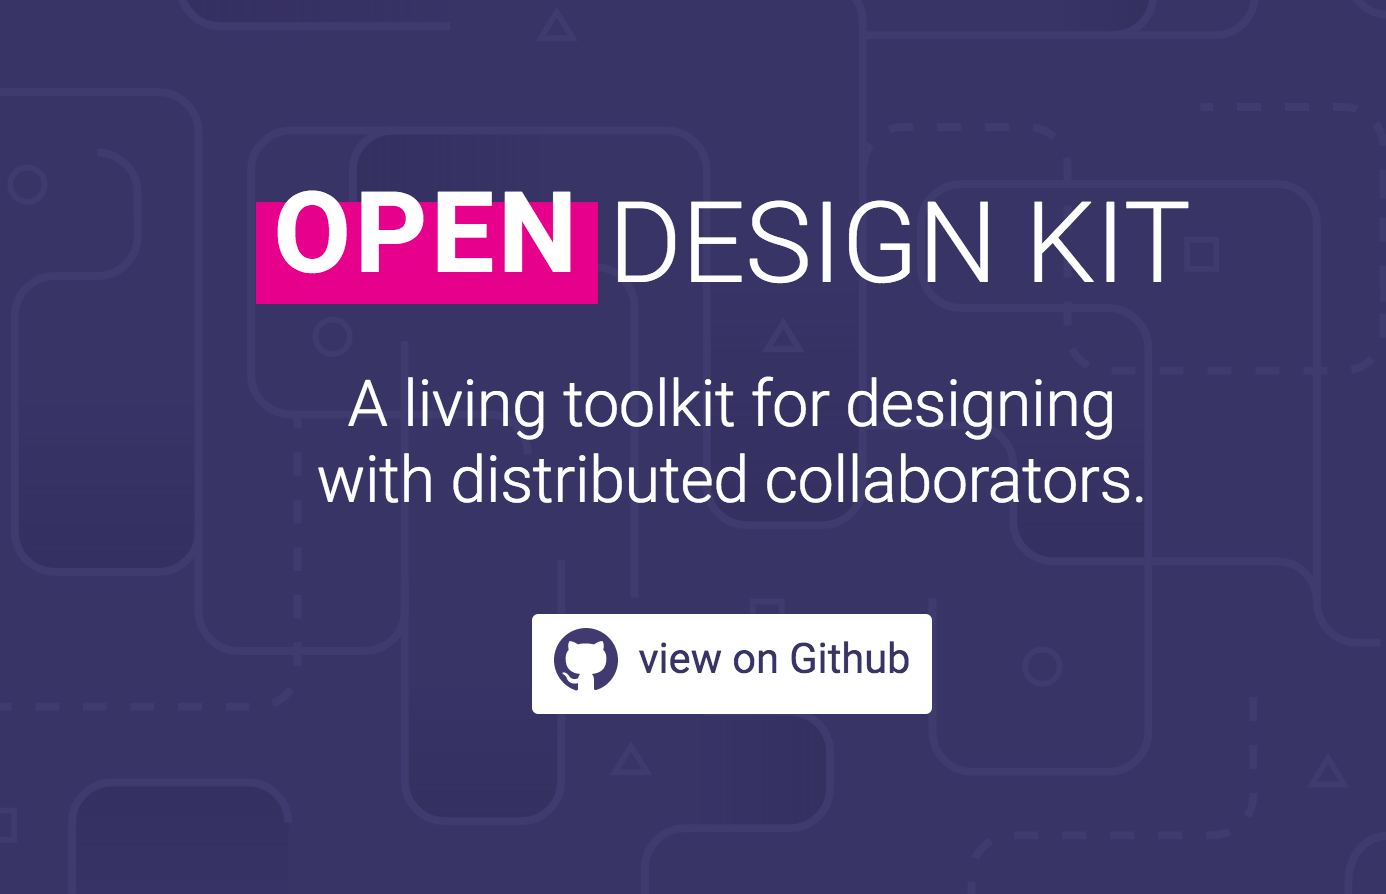 open design kit logo image